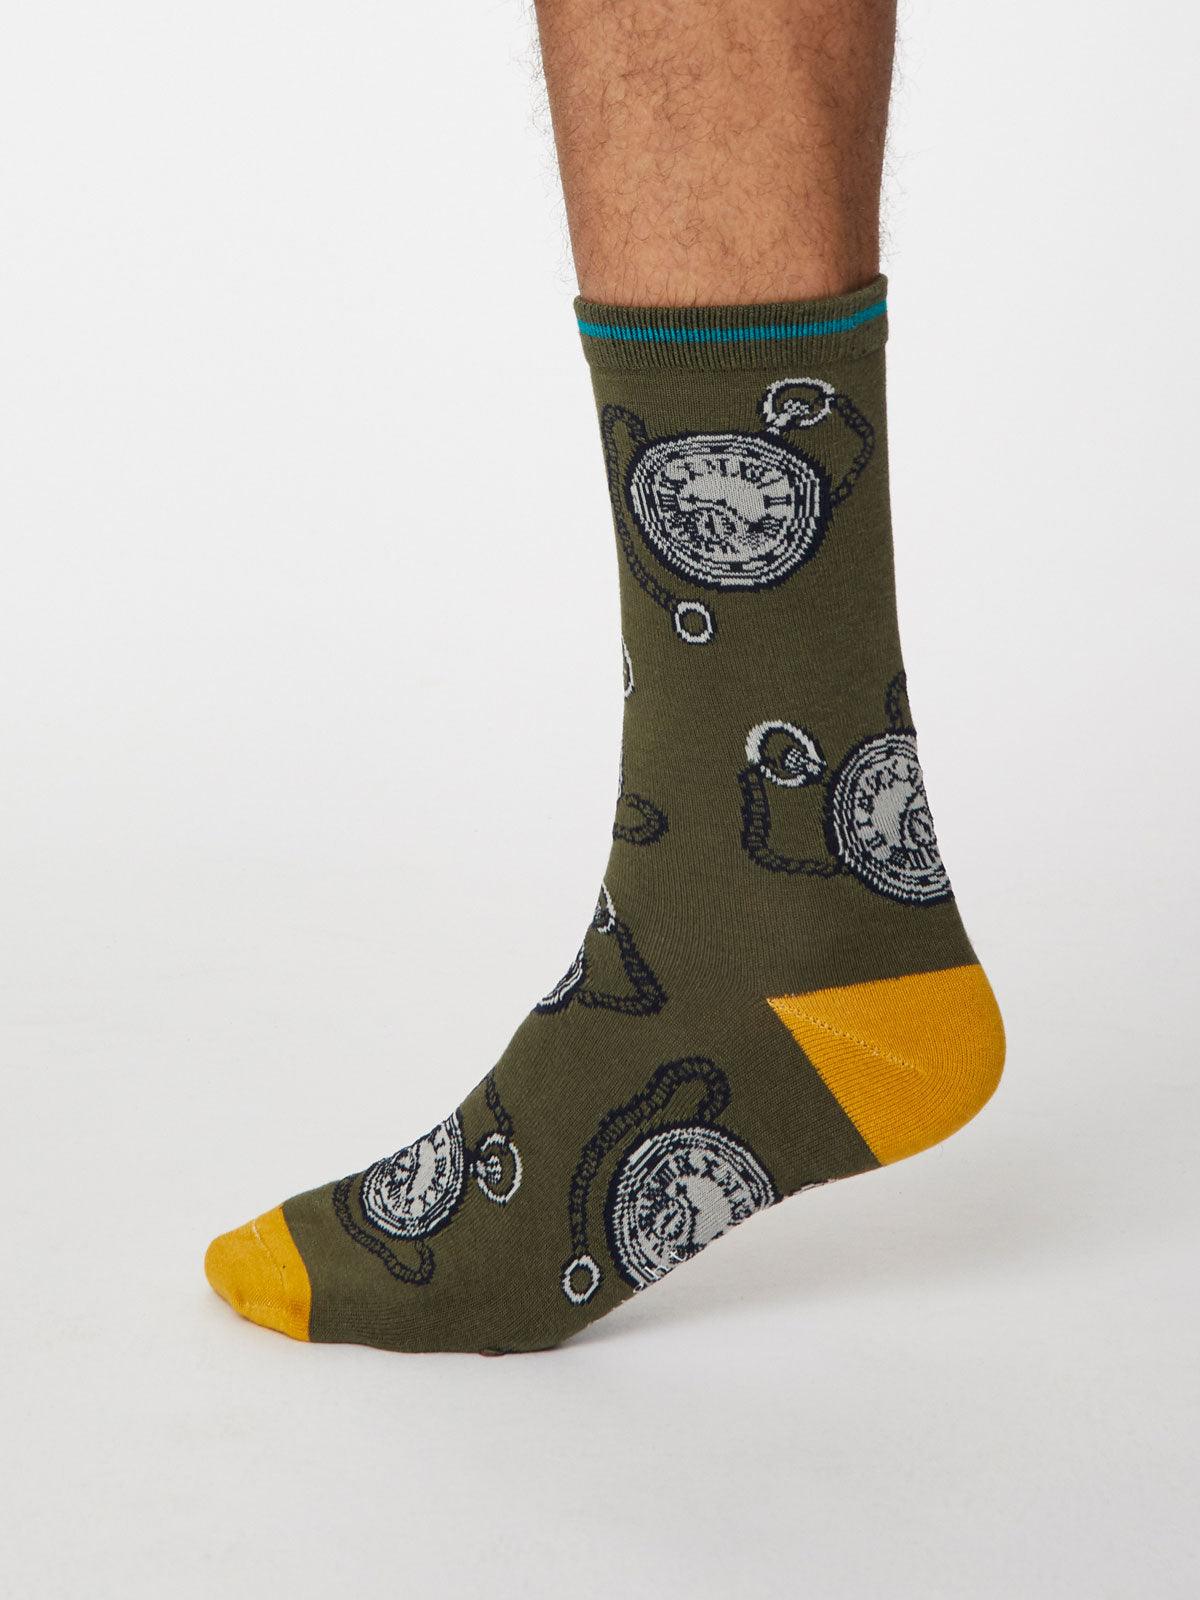 Momento Socks - Khaki Green - Thought Clothing UK